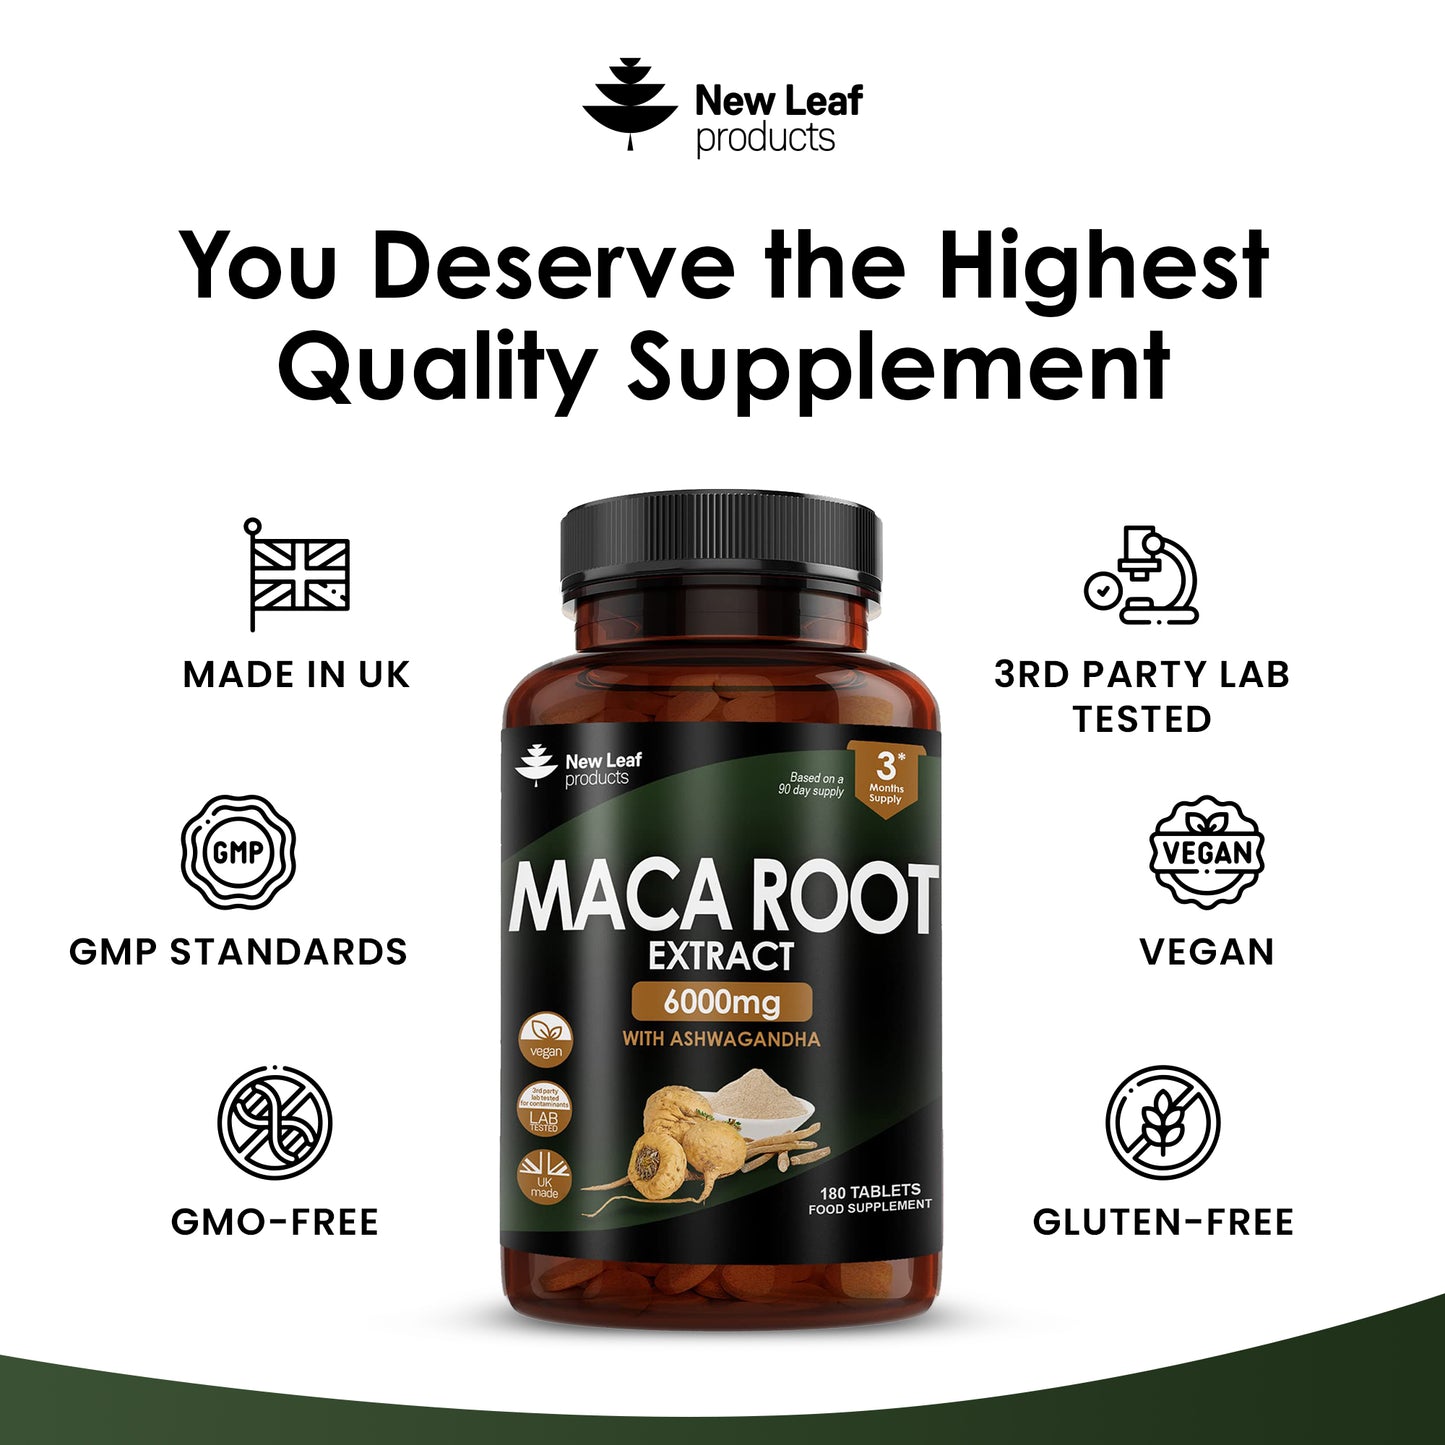 Maca Root 6000mg With Ashwagandha – 100% Peruvian Black Maca Root 180 Tablets